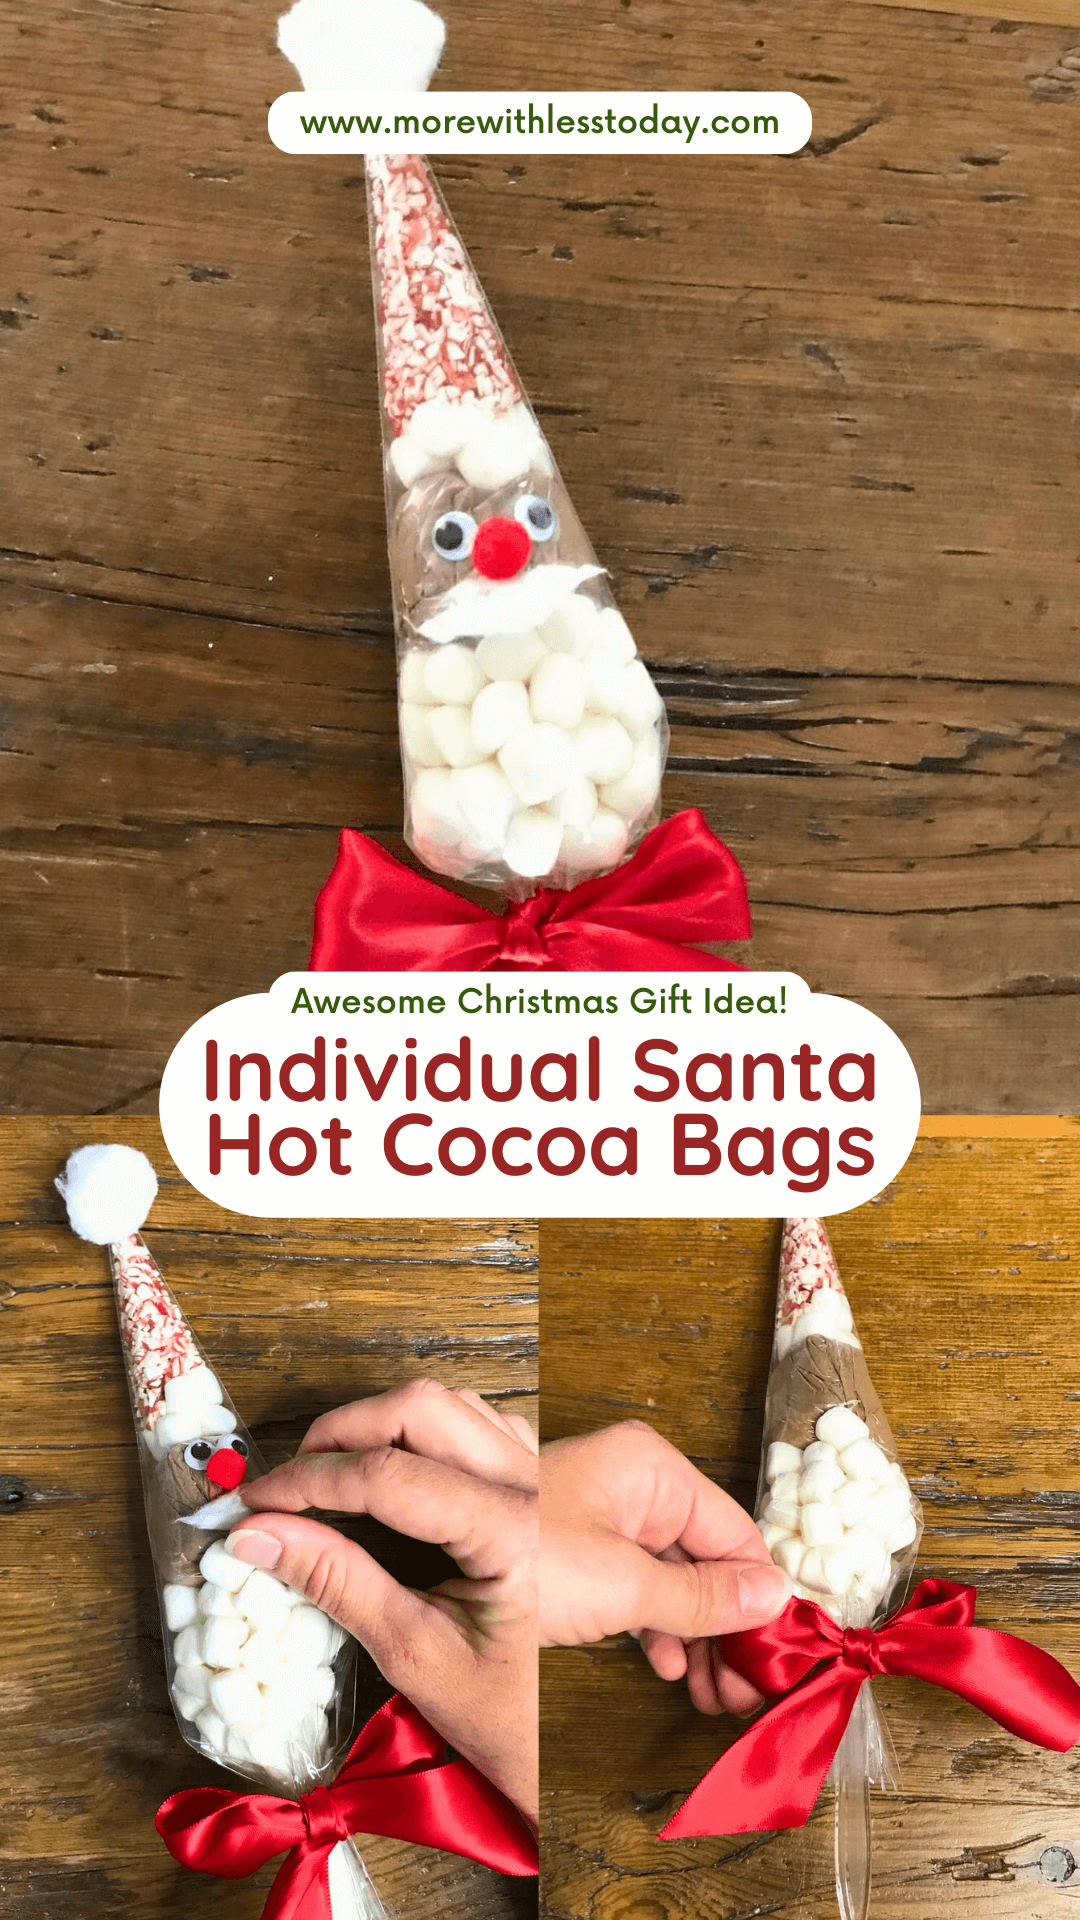 Individual Santa Hot Cocoa Bags - PIN